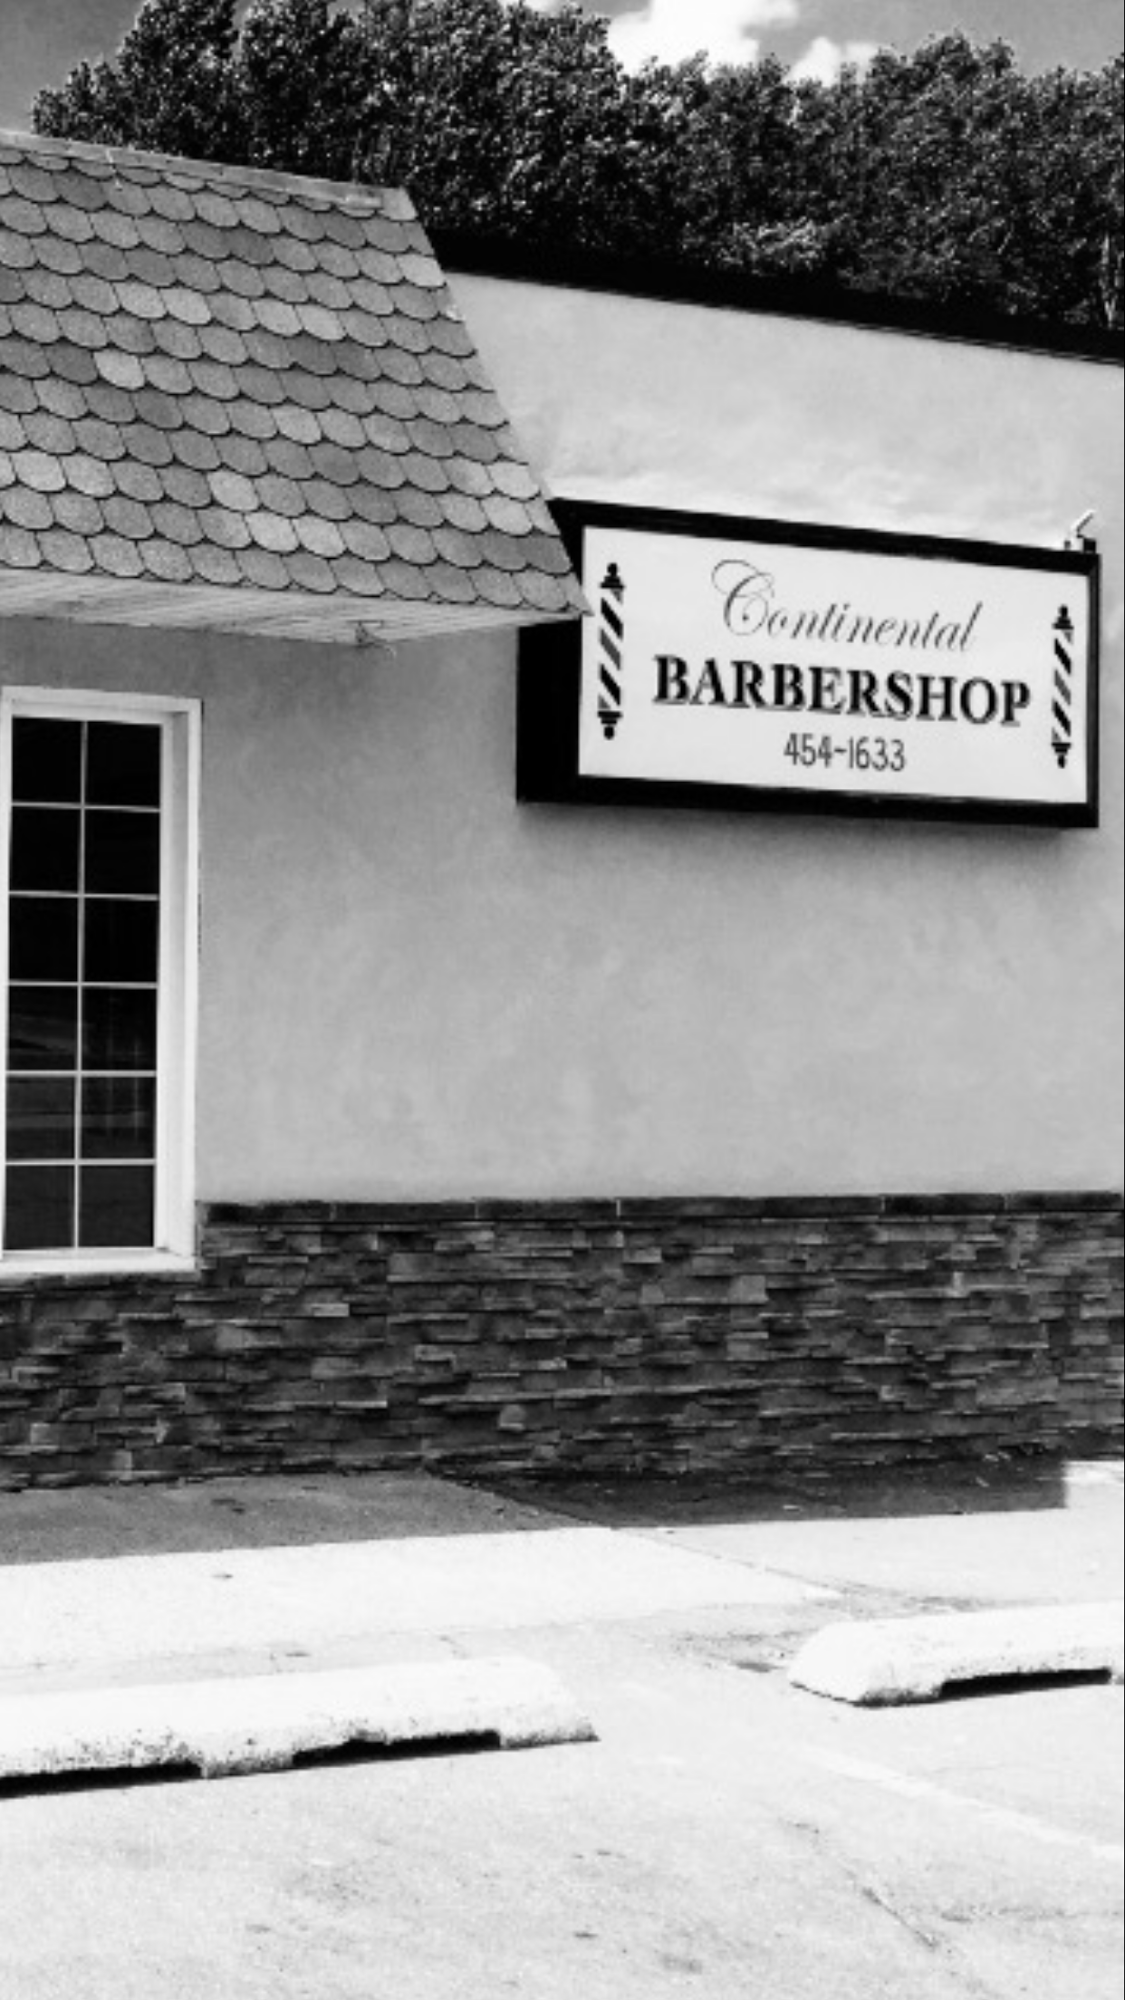 Continental Barber shop